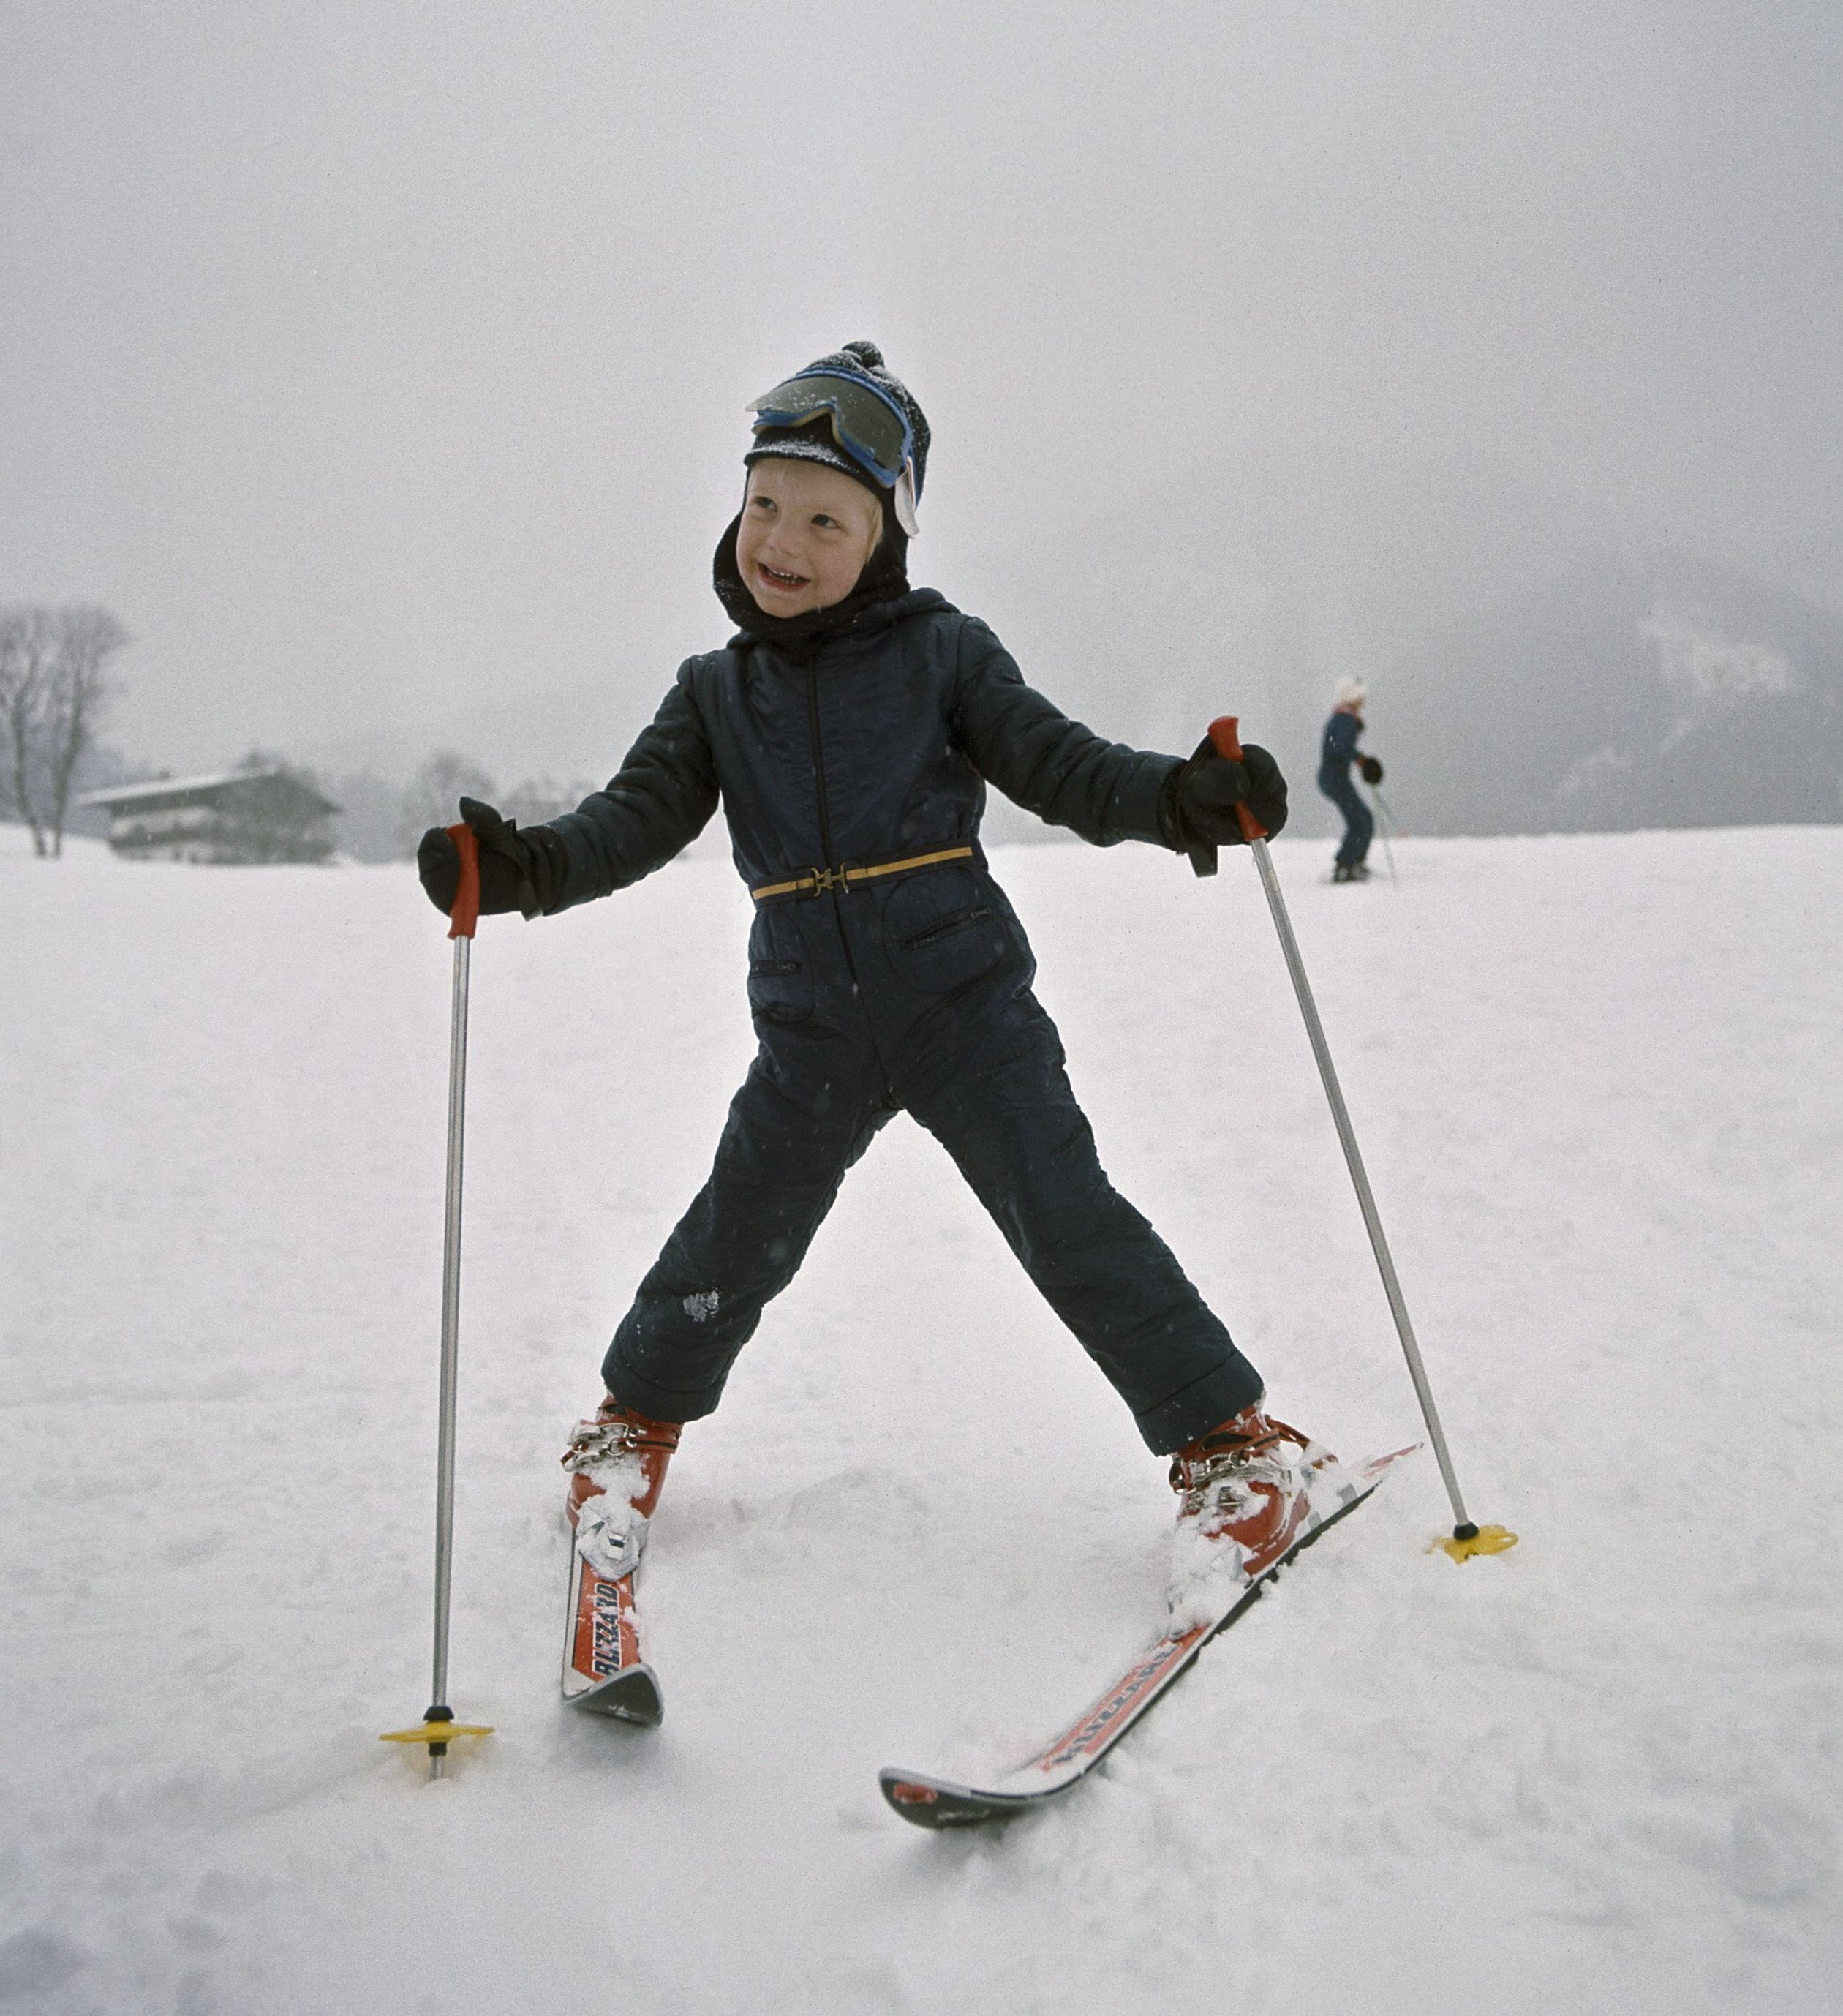 Plezier op de ski's tijdens de wintersportvakantie in het Oostenrijkse Zell am See, 29 december